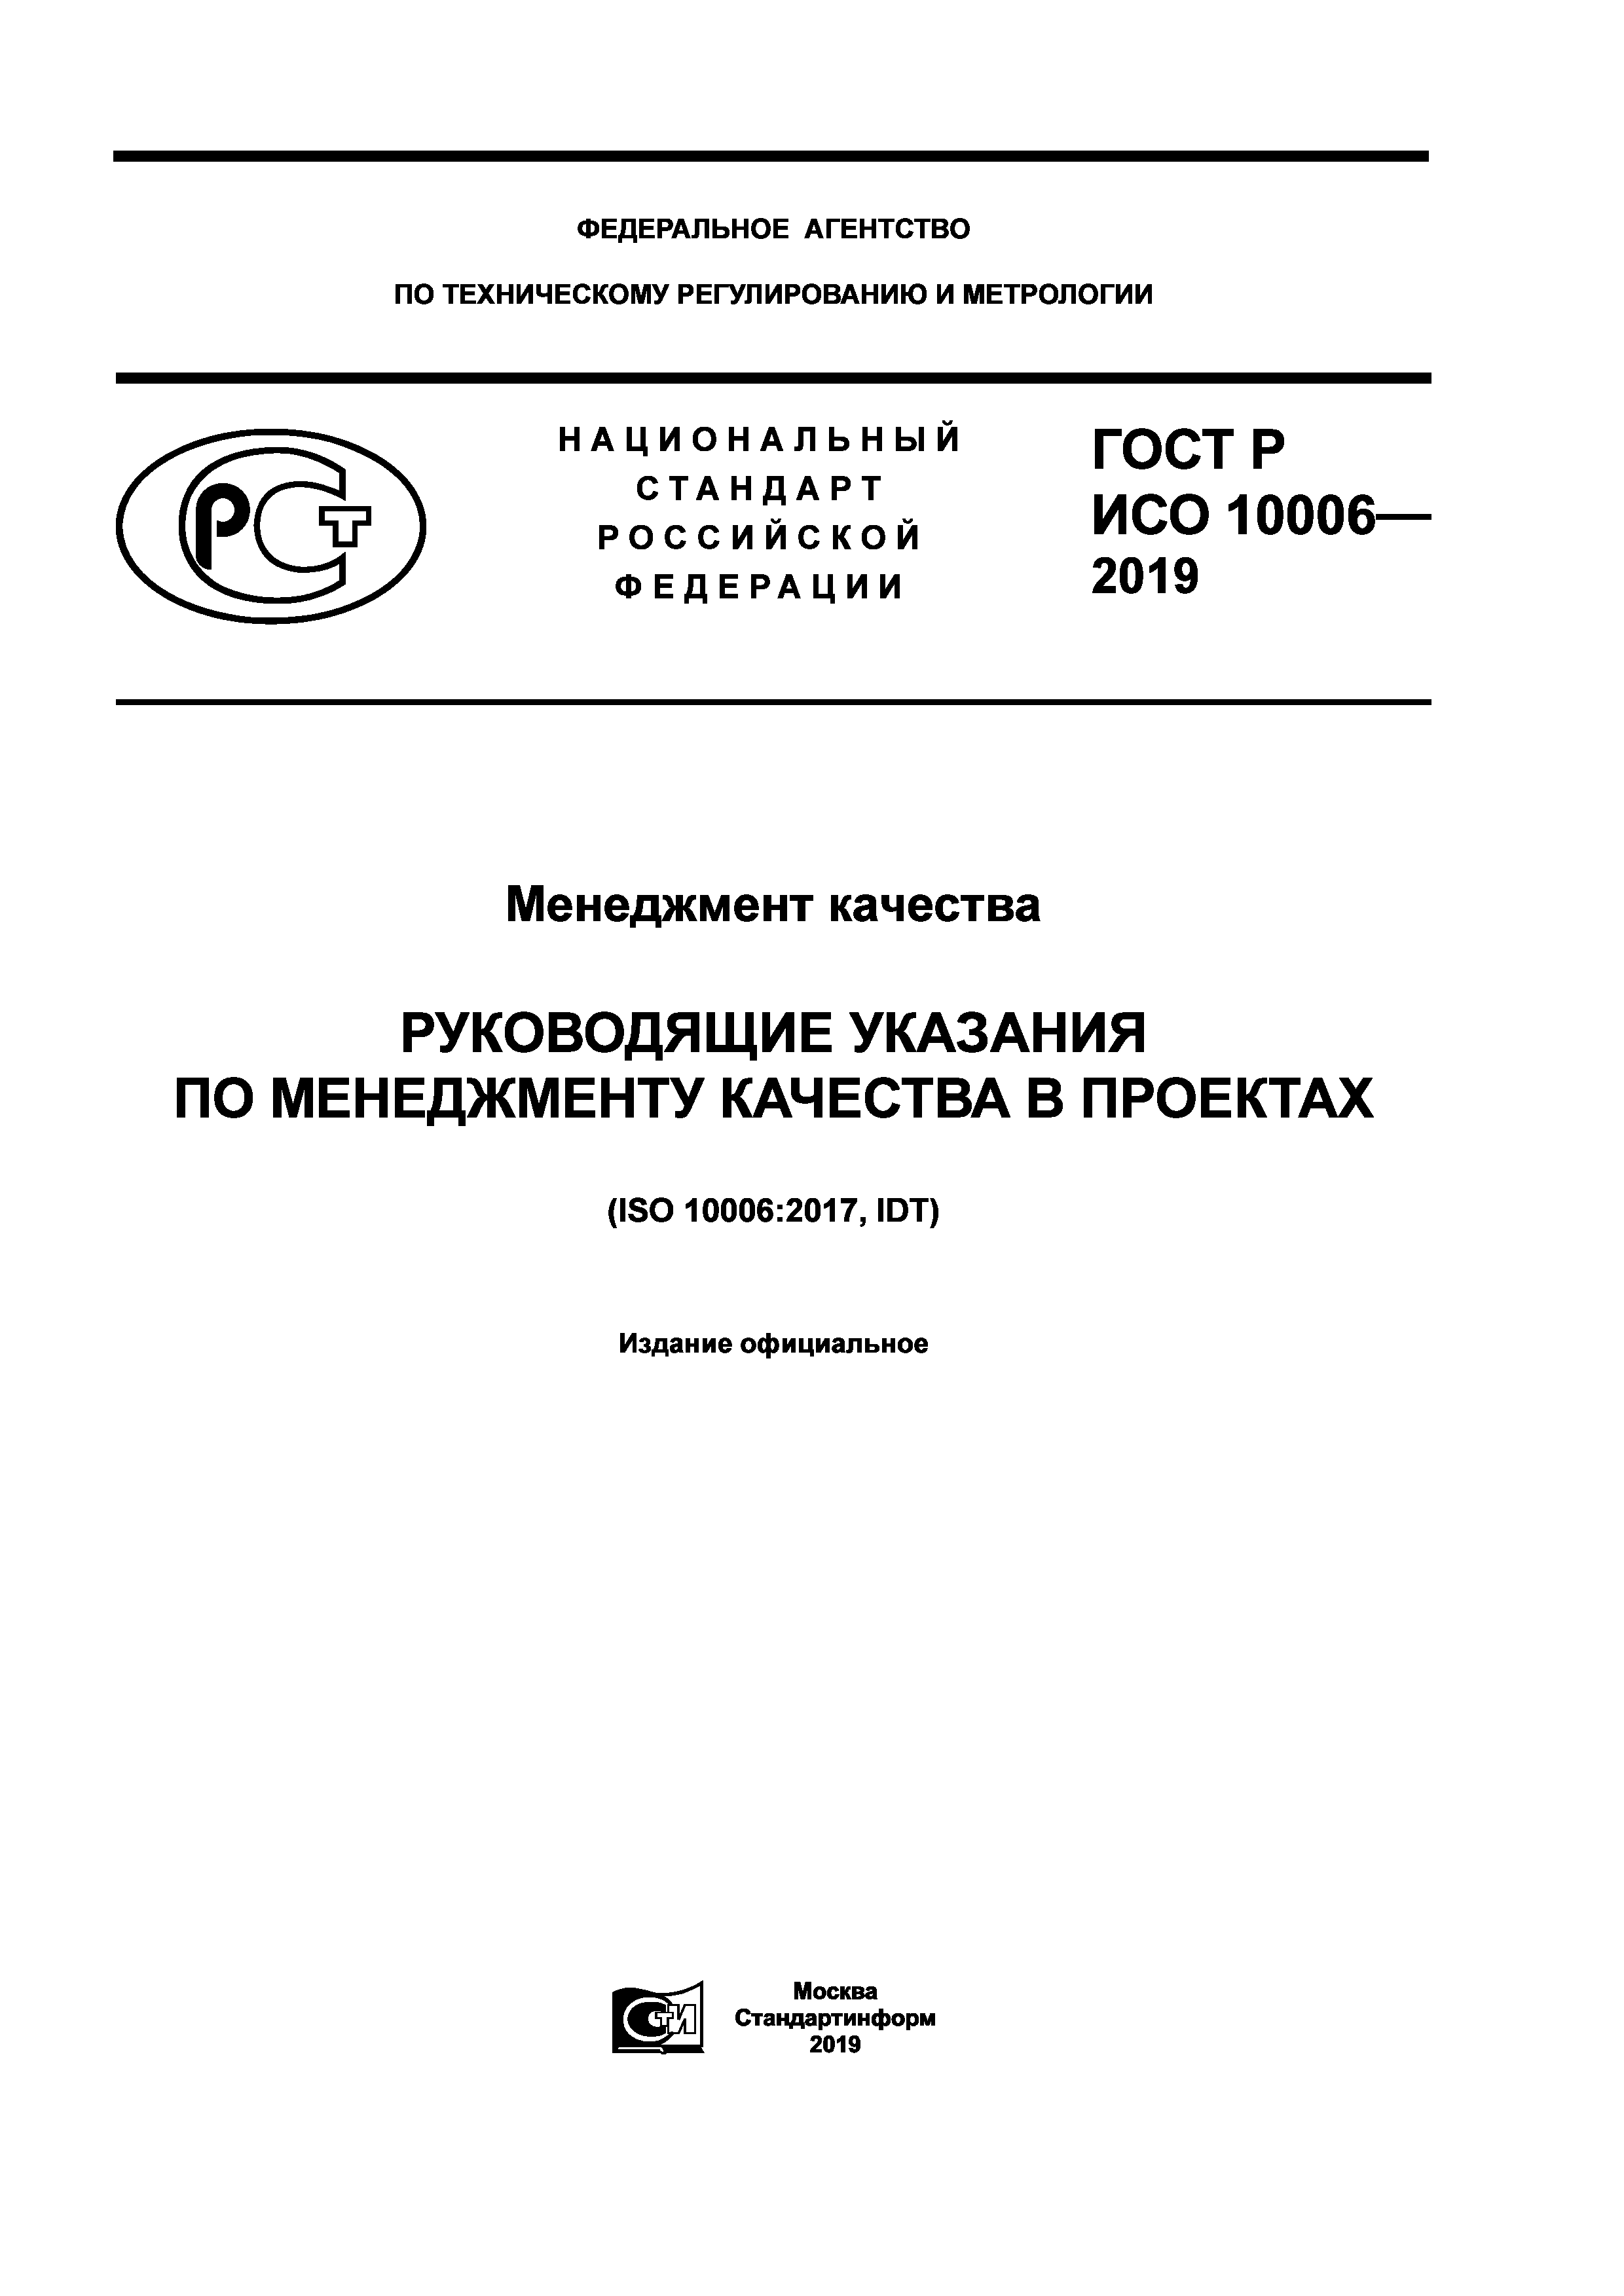 ГОСТ Р ИСО 10006-2019